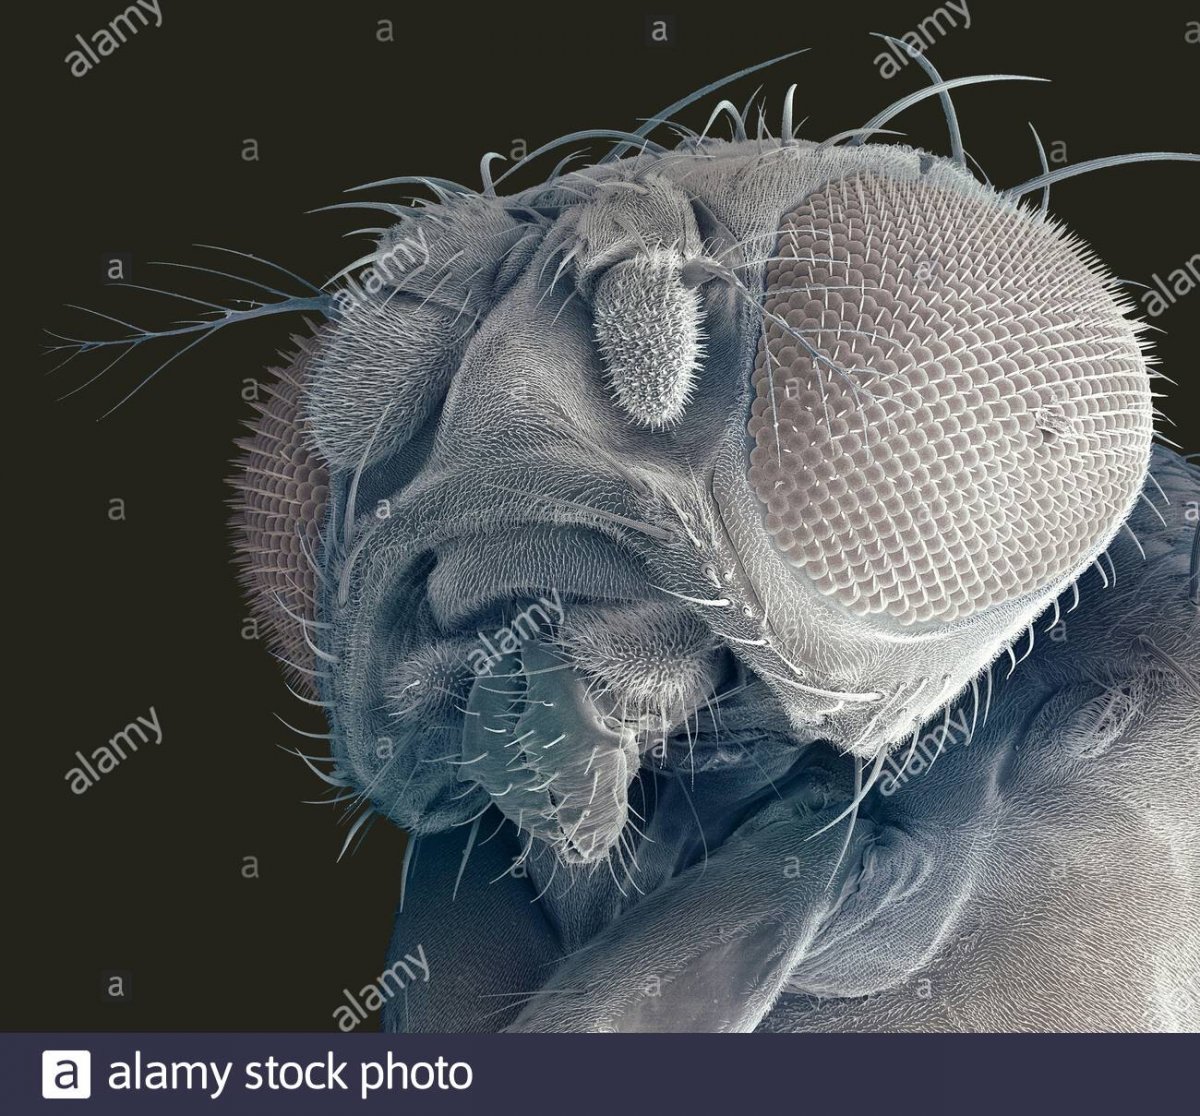 Астраханская мошка под микроскопом